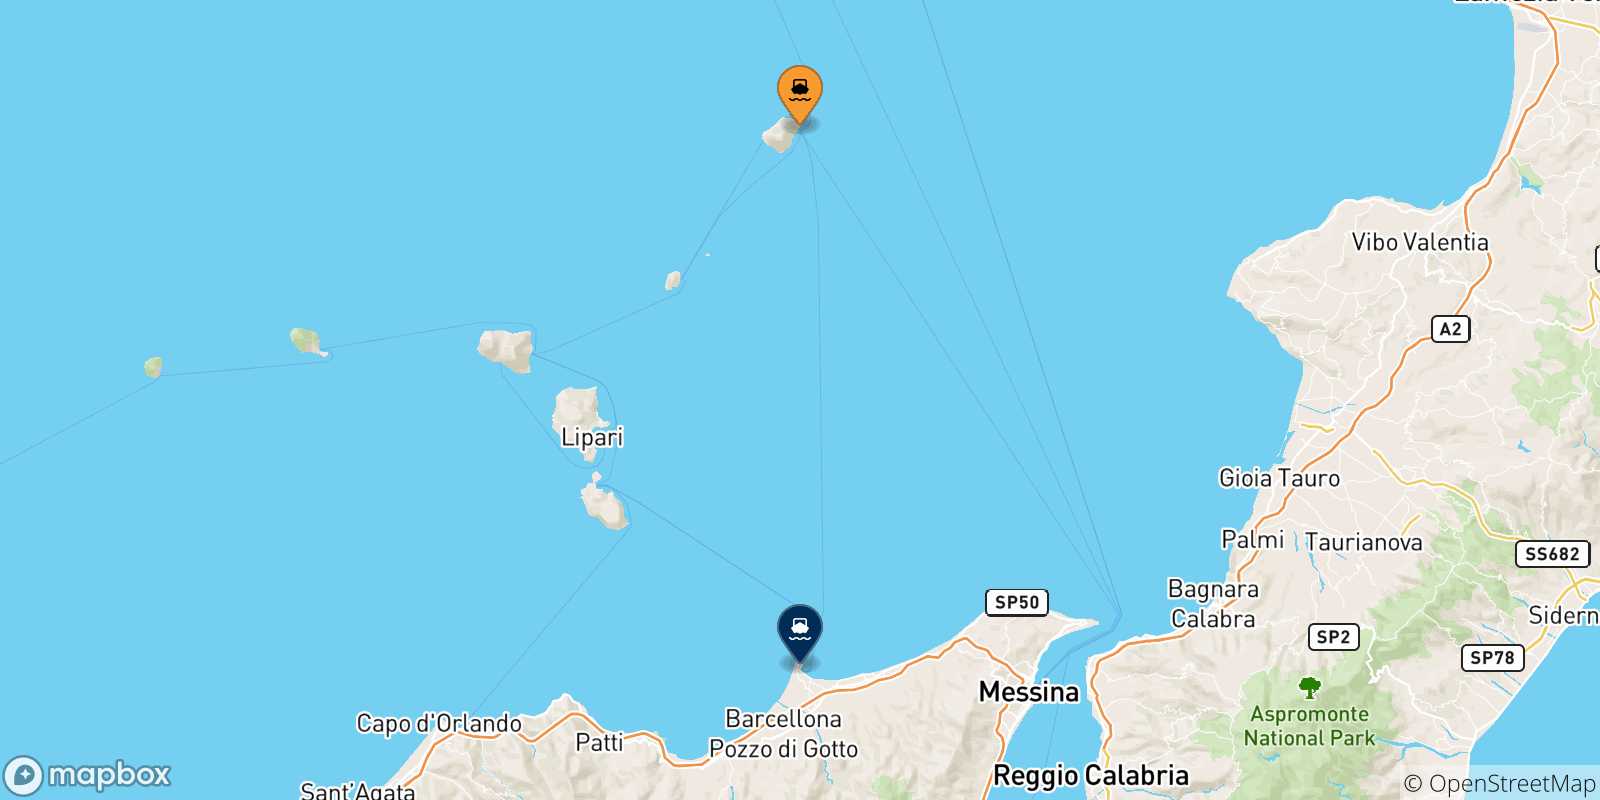 Mappa delle possibili rotte tra Stromboli e la Sicilia